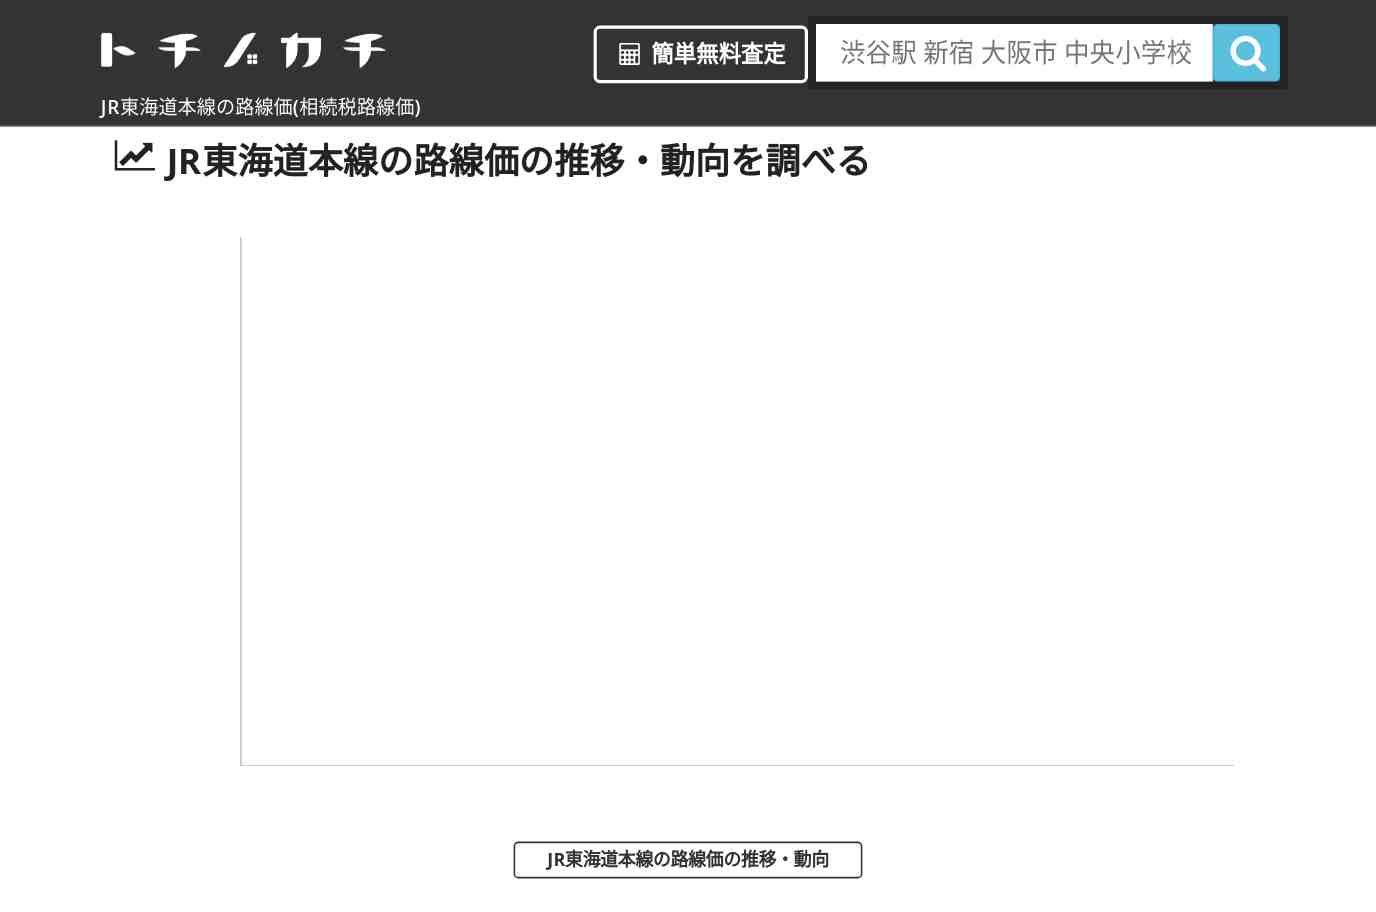 JR東海道本線(JR)の路線価(相続税路線価) | トチノカチ